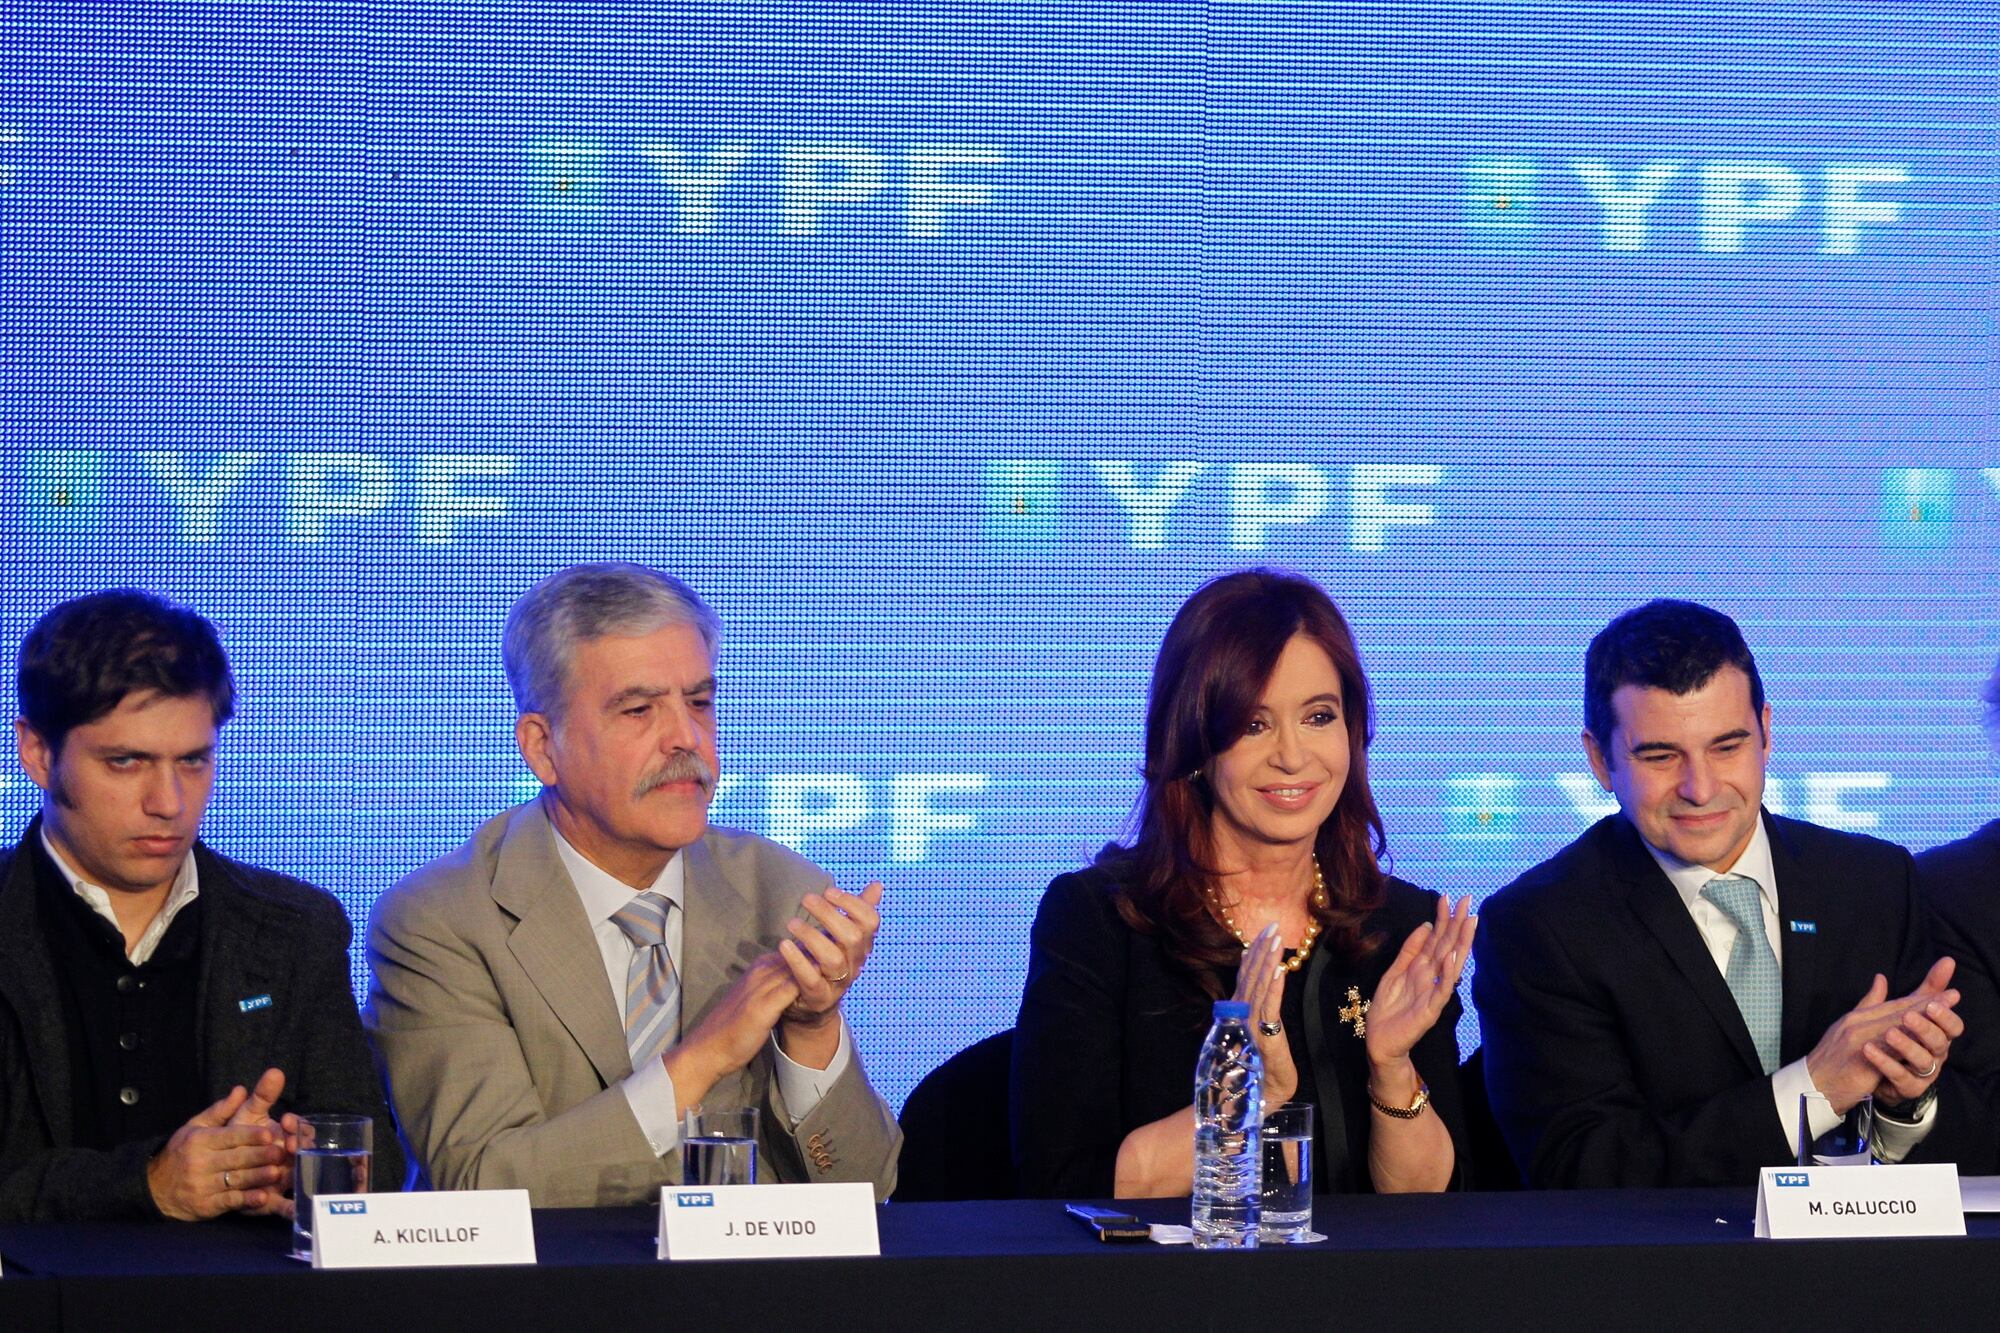 Presentación del Plan Estratégico de YPF con Miguel Galuccio, Julio De Vido, Axel Kicillof y la expresidenta Cristina Kirchner en el Hotel Sheraton, el 5 de junio de 2012, luego de la estatización del 51% de las acciones de la empresa.